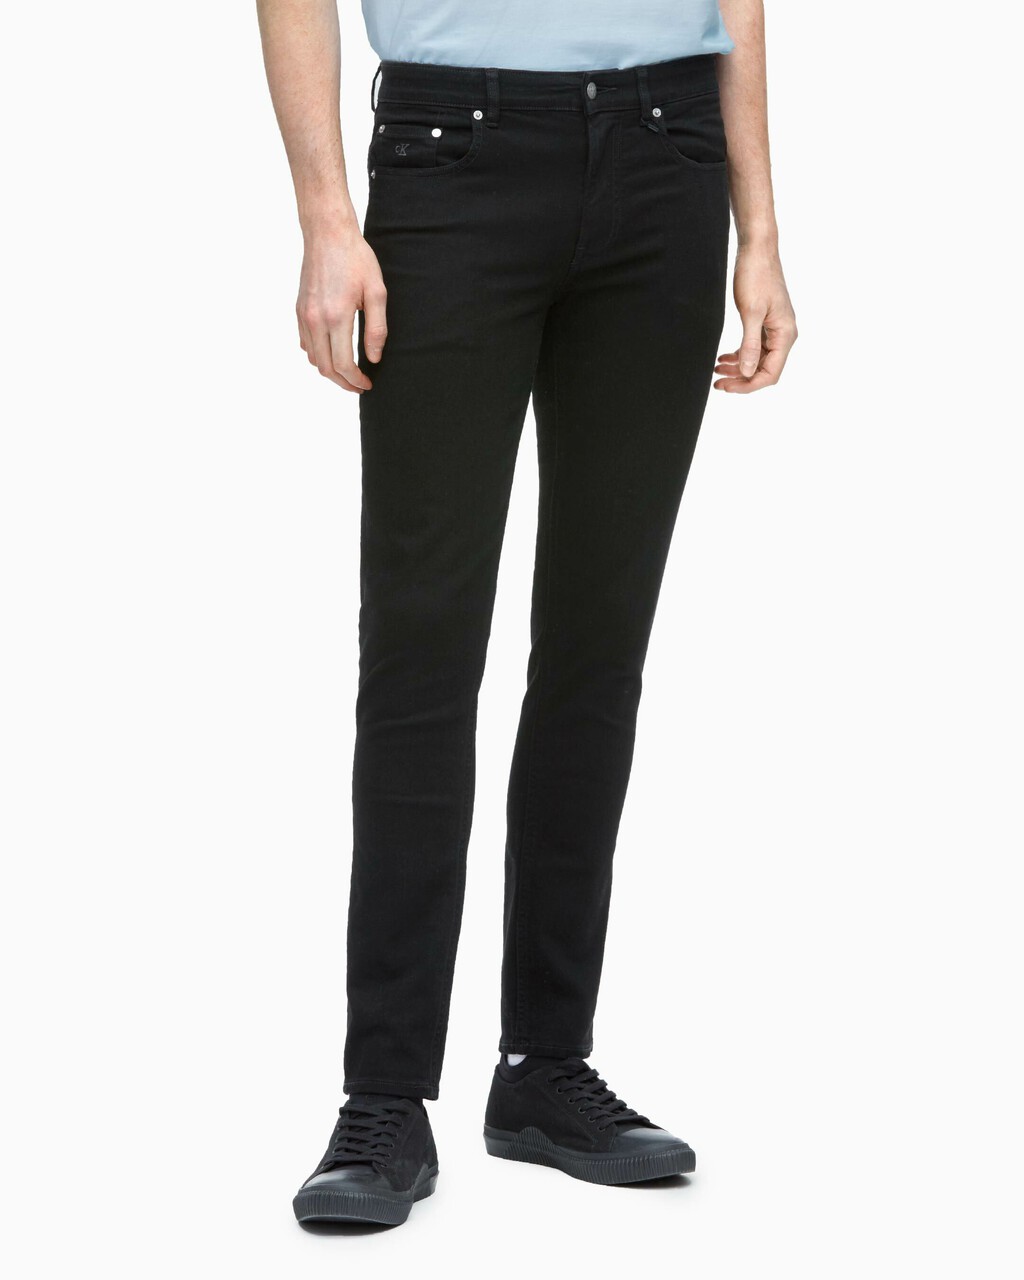 CKJ 017 Core Body Skinny Jeans, Acd Black, hi-res